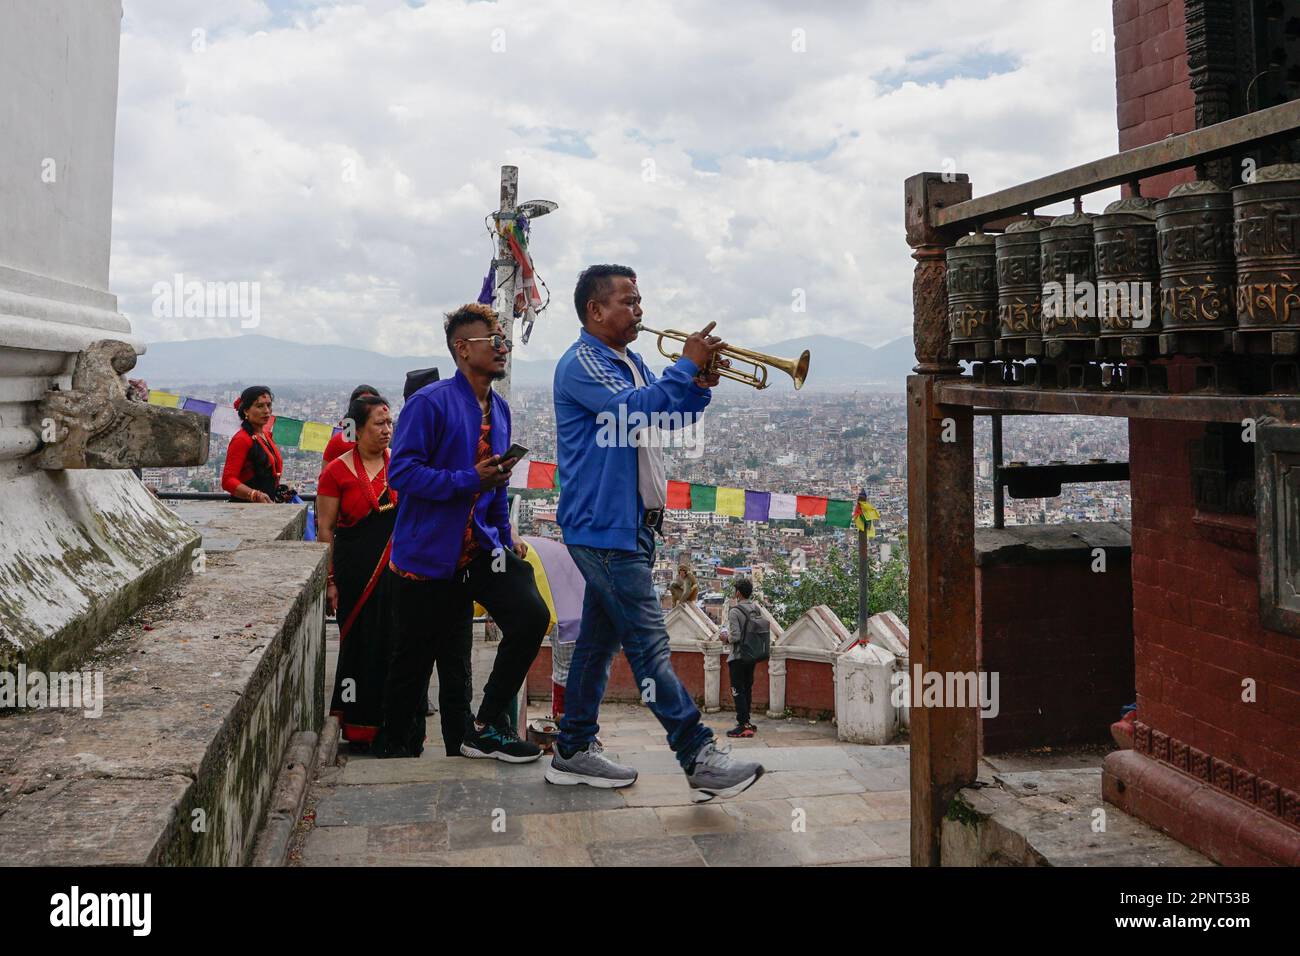 Musiker beten an, indem sie am 8. September 2021 im Swayambhunath Stupa in Kathmandu, Nepal, ergebene Musik spielen. Während der Gunla, einem heiligen Monat, der von Buddhisten aus Newar gefeiert wird, besuchen Musikgruppen heilige Stätten und spielen Lieder. (Shilu Manandhar/Global Press Journal) Stockfoto